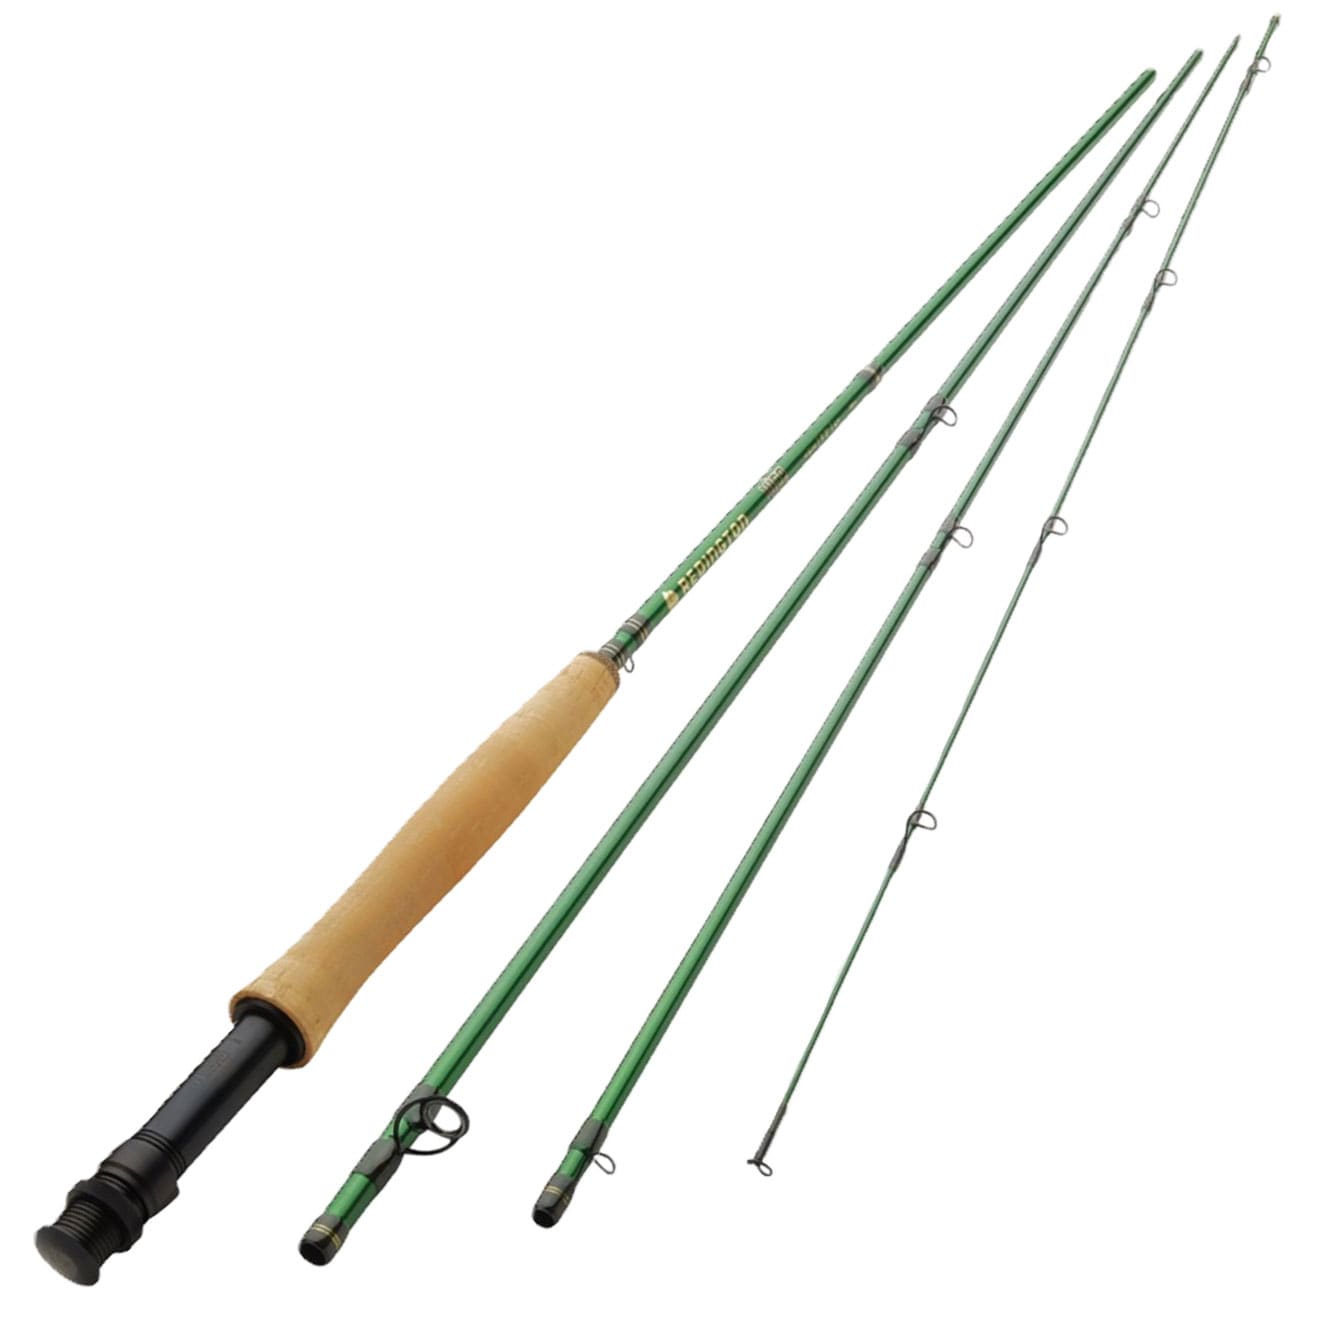 Fly fishing rod Fishing Equipment at